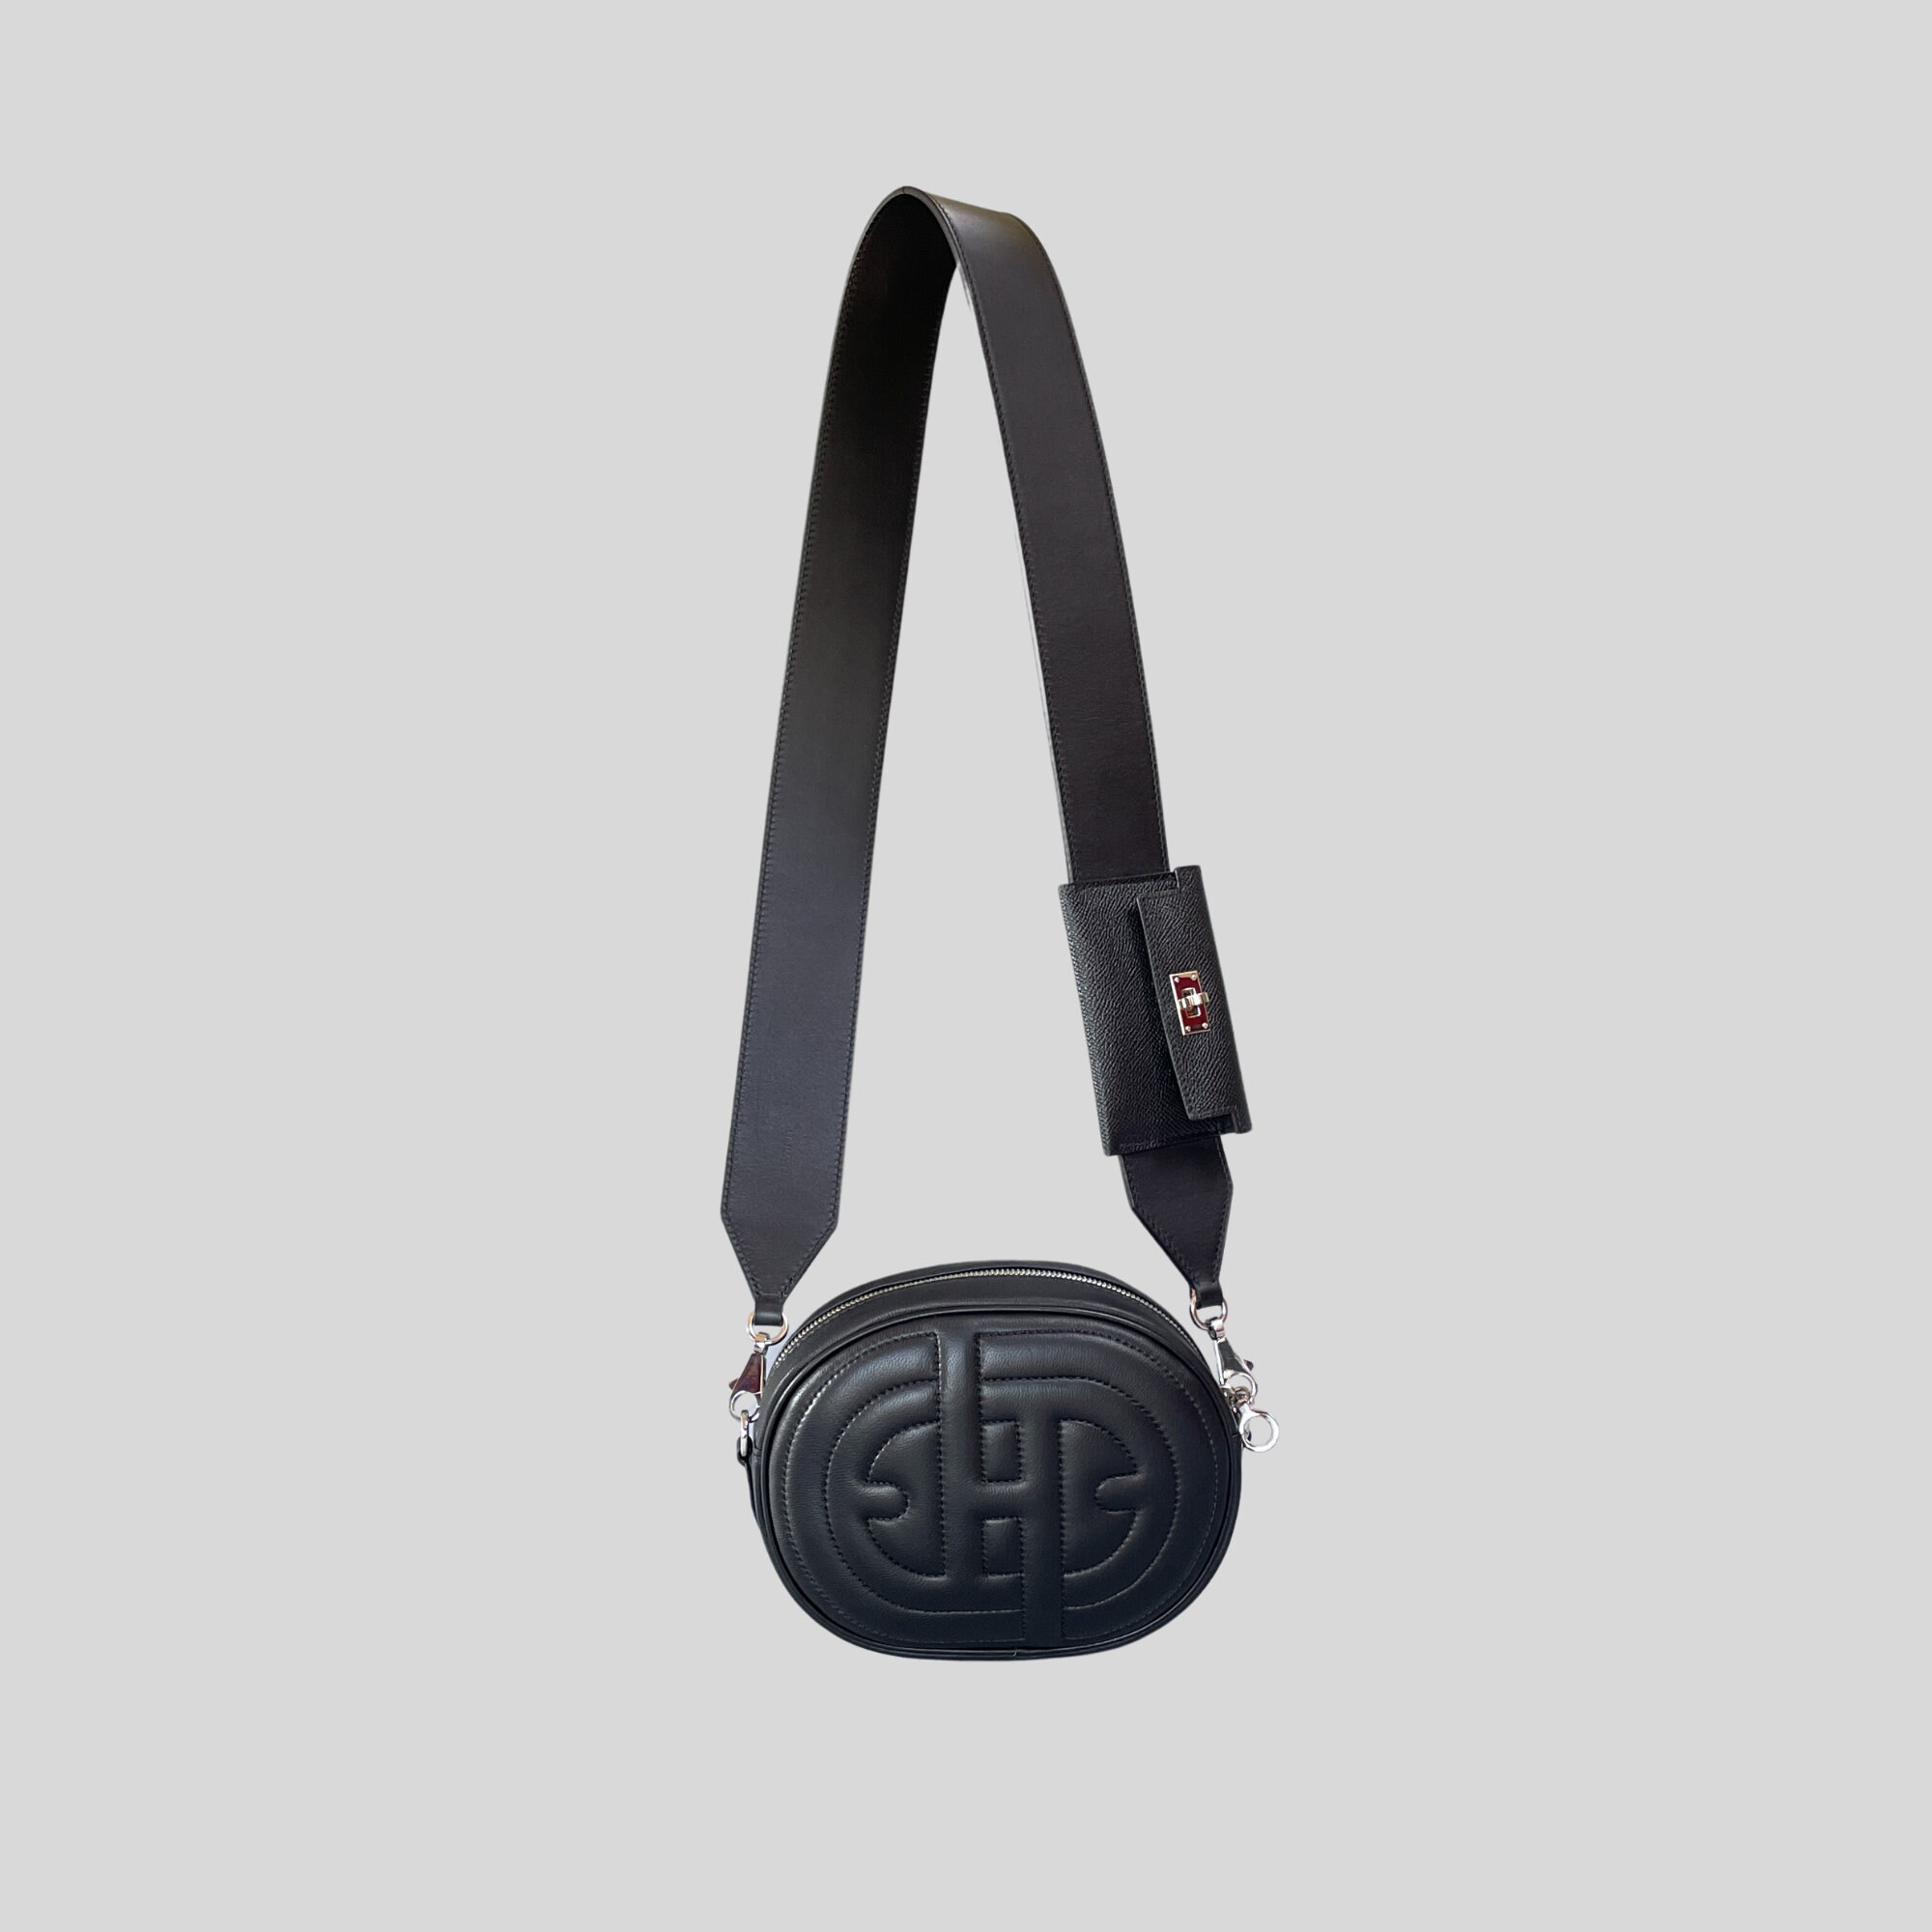 WUTA Bag Strap For Hermes Evelyn Bags Canvas Shoulder Crossbody Straps Belt  Replacement Adjustable 100-110cm